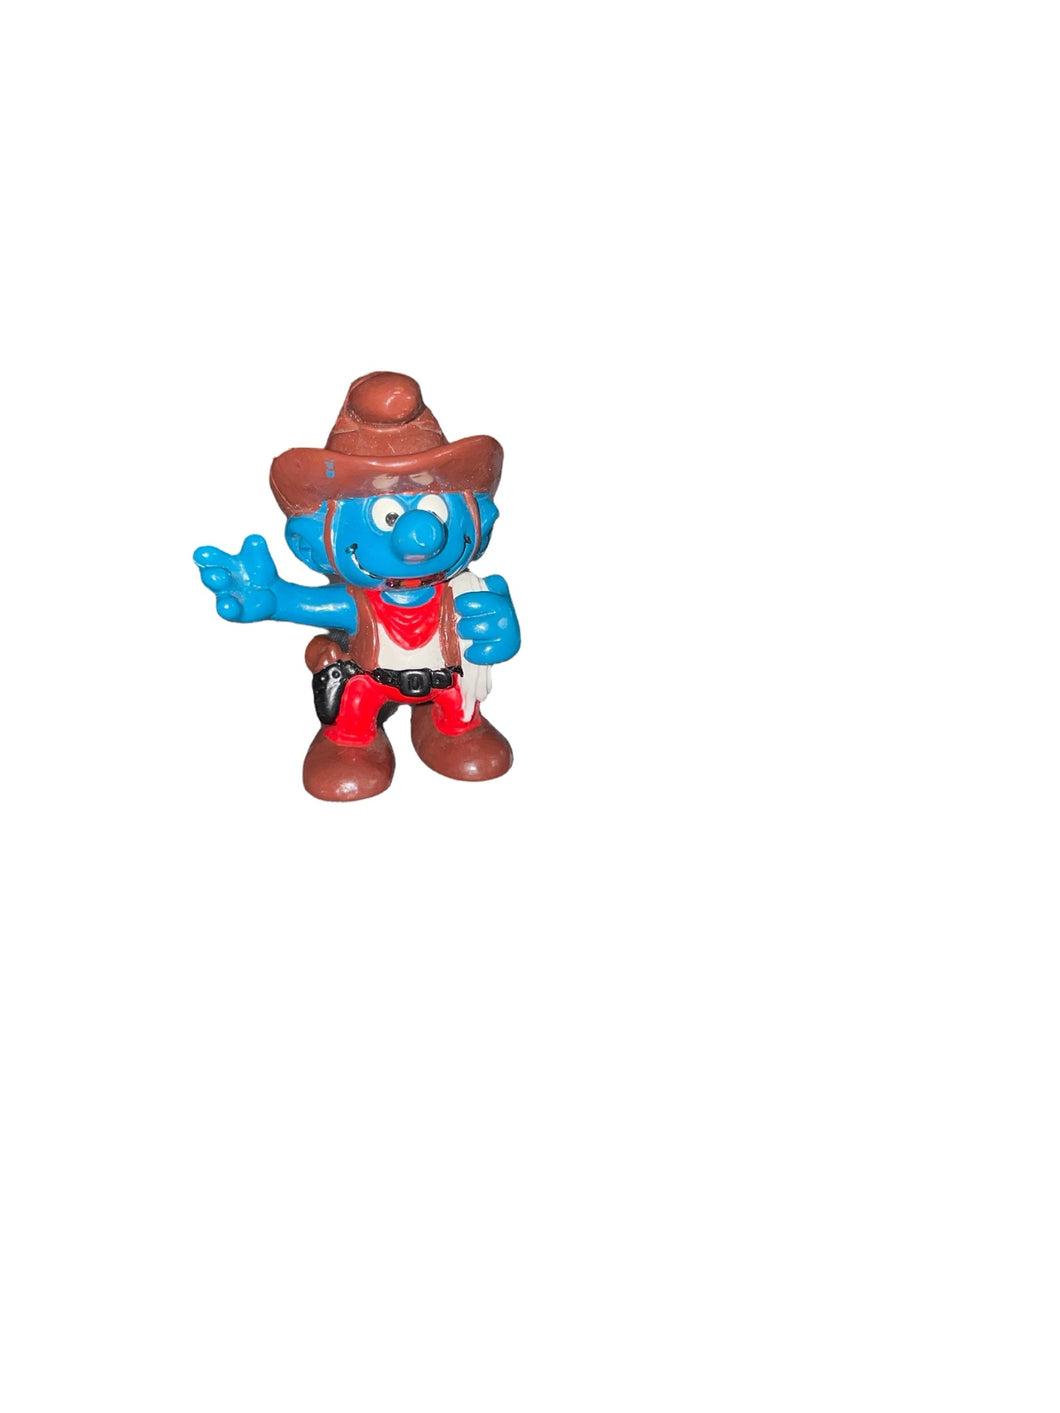 1981 Peyo Schleich The Smurfs Cowboy Western Figurine